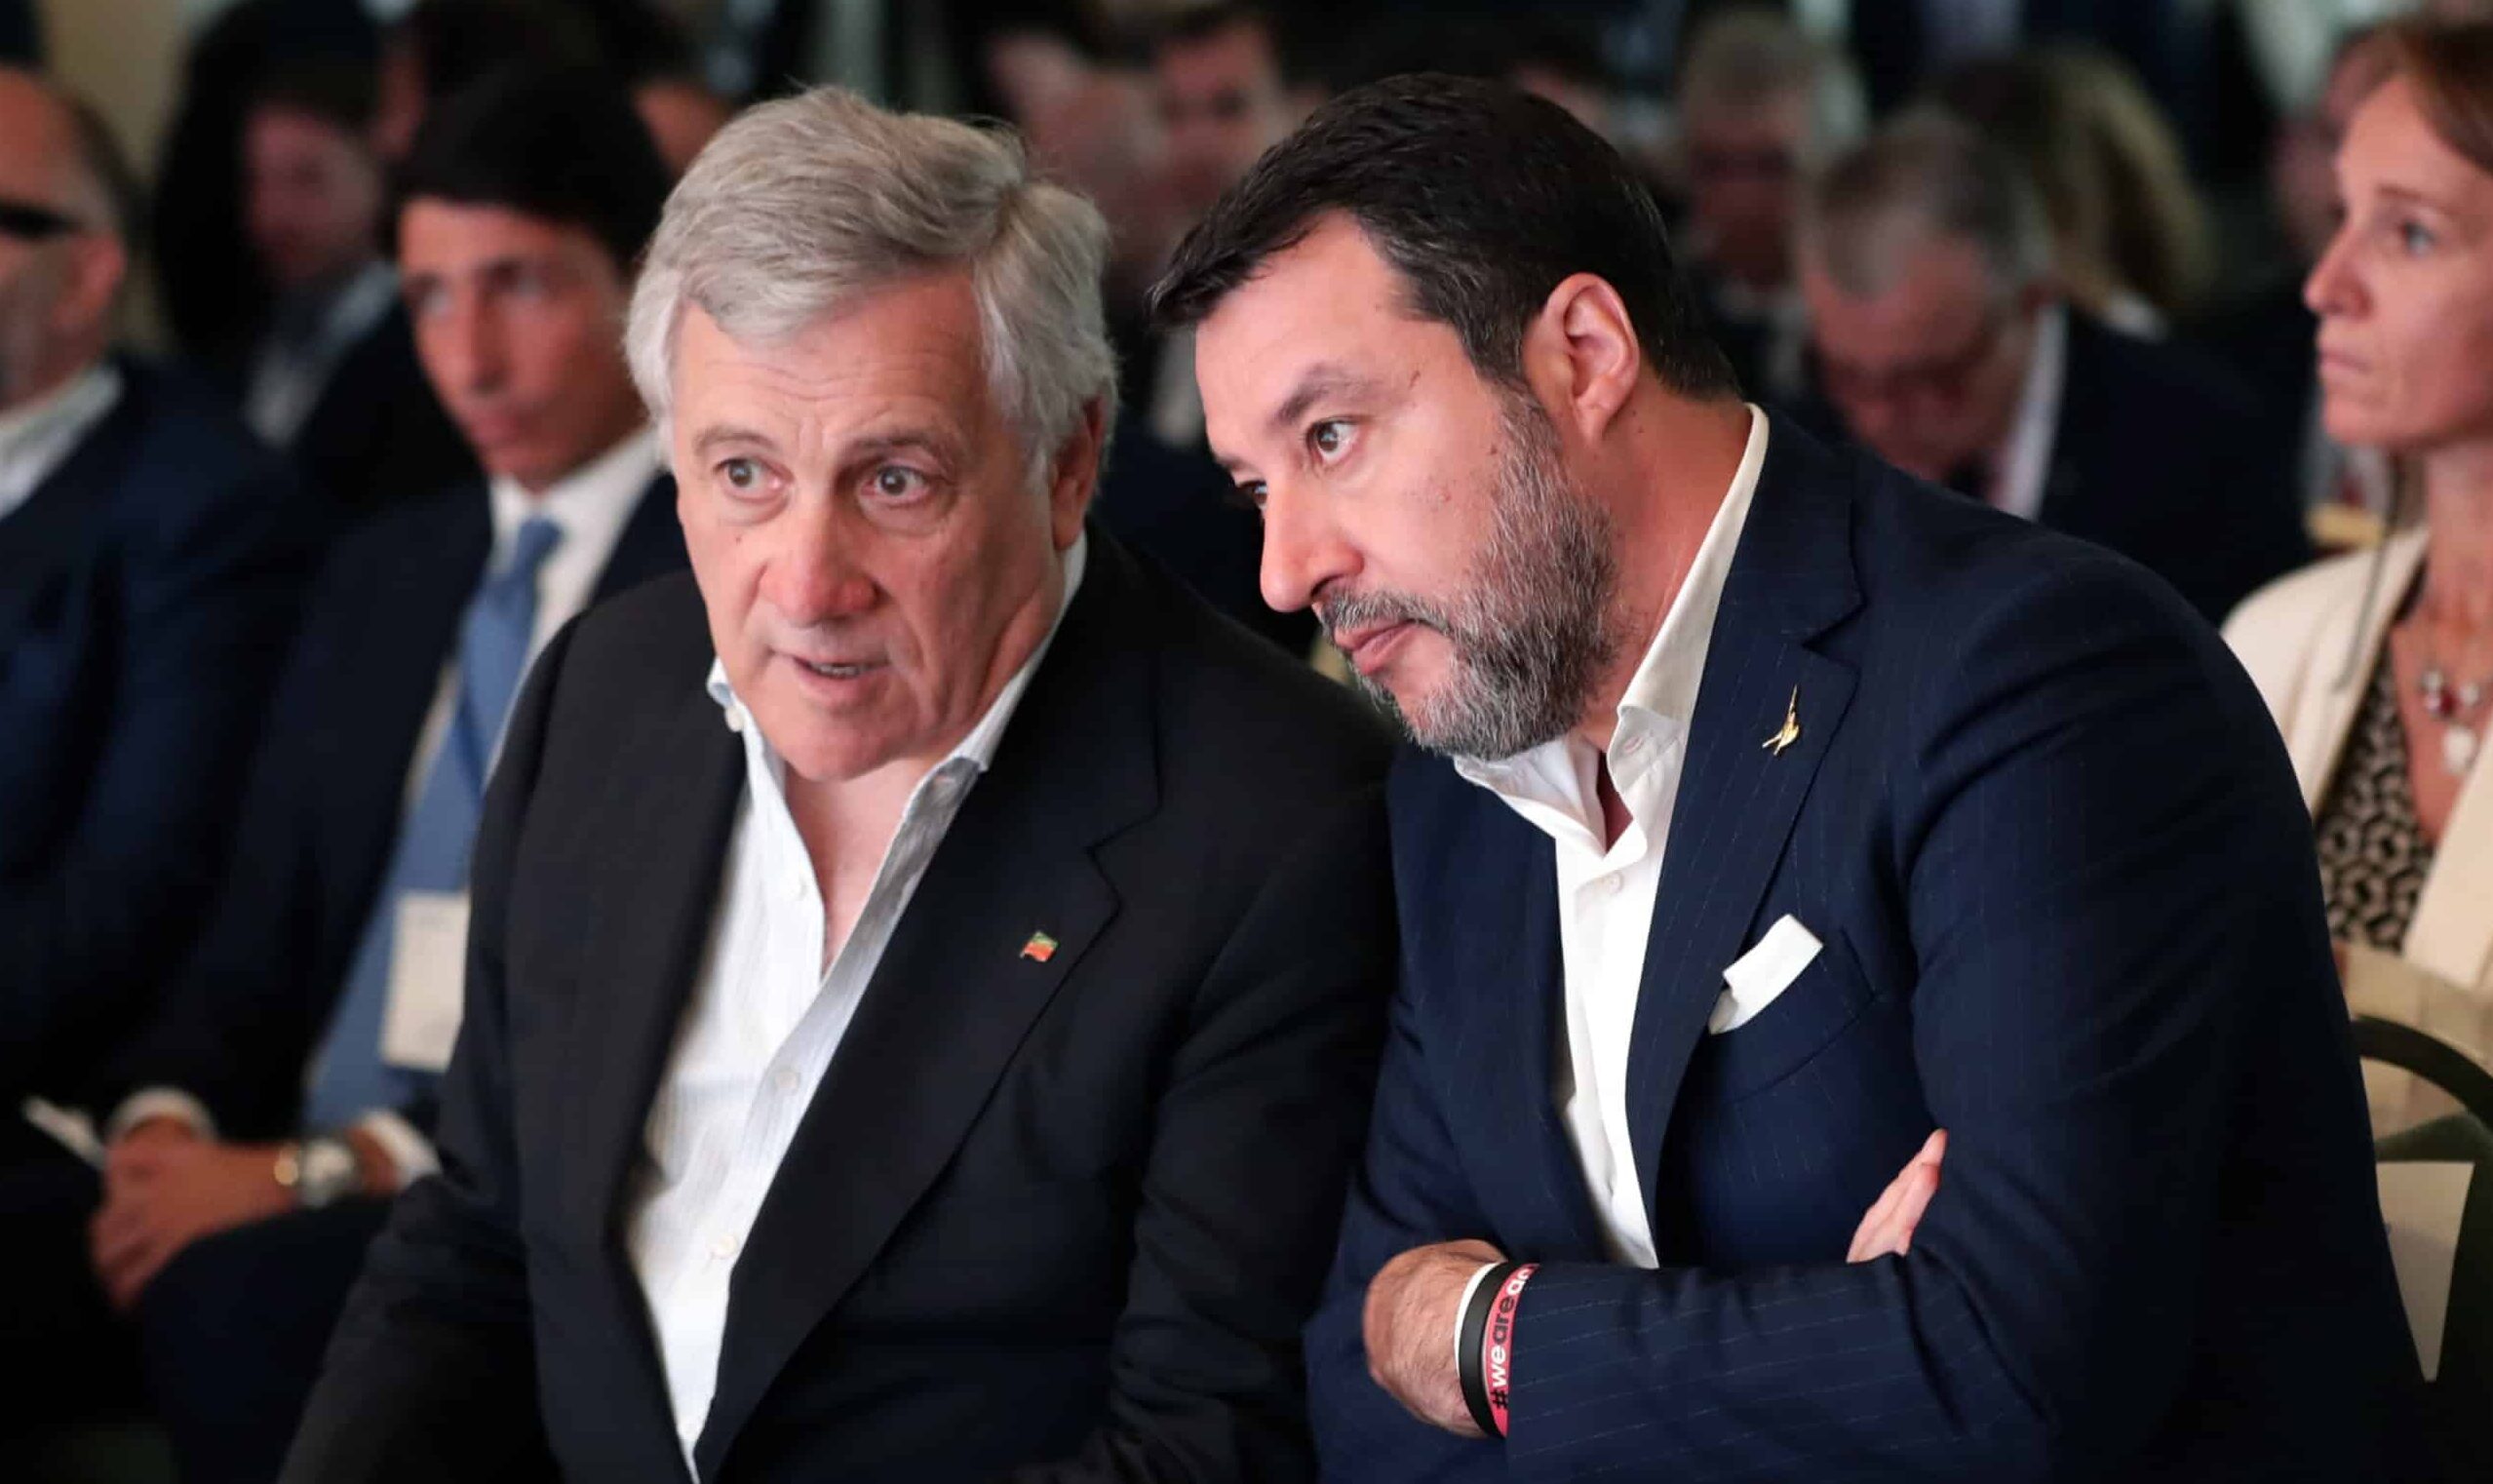 Assist di Tajani alla Meloni. Apre alla candidatura Ue per mettere in riga Salvini